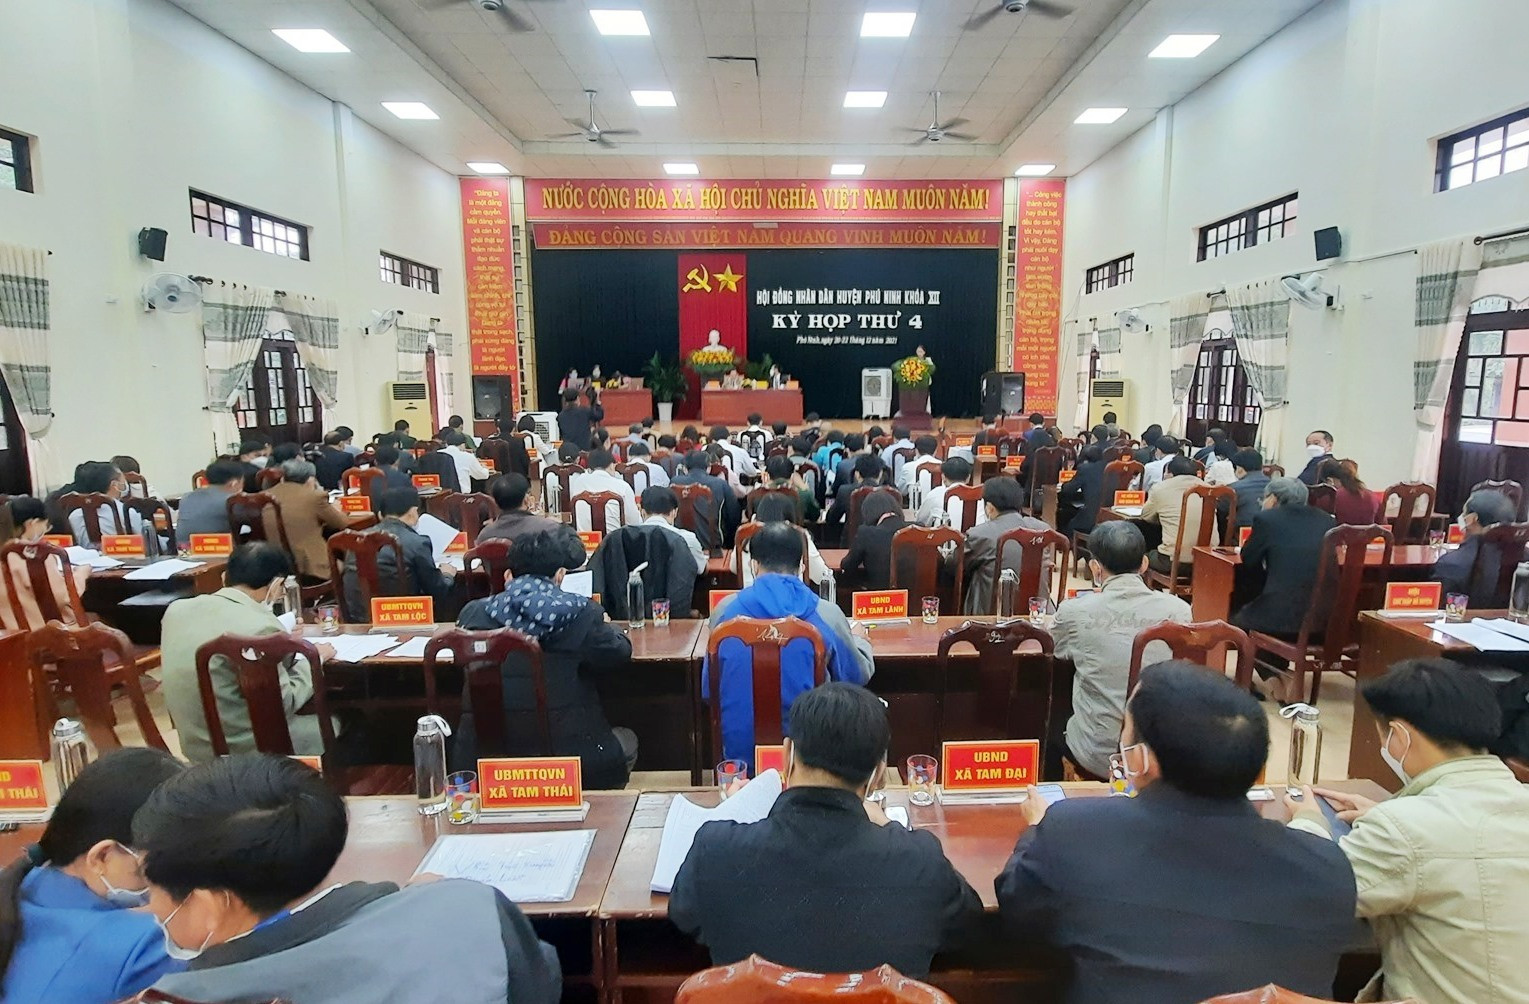 Quang cảnh khai mạc kỳ họp thứ 4 HĐND huyện Phú Ninh khóa XII. Ảnh: Đ.V